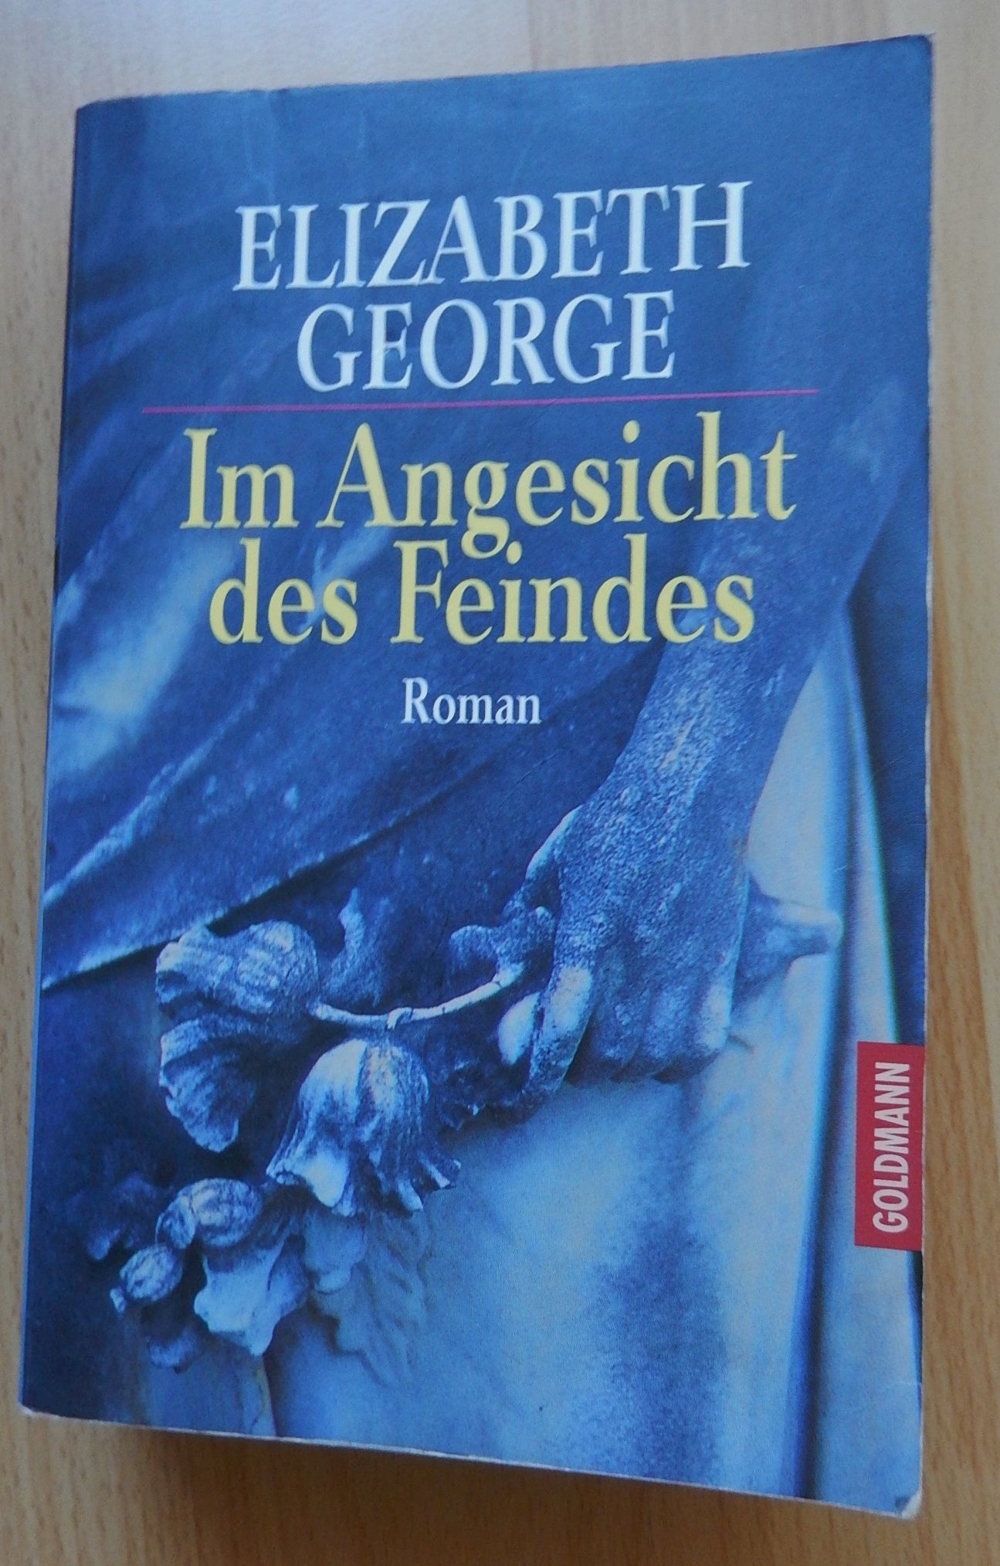 Im Angesicht des Feindes + Elizabeth George ISBN 3-442-44108-0